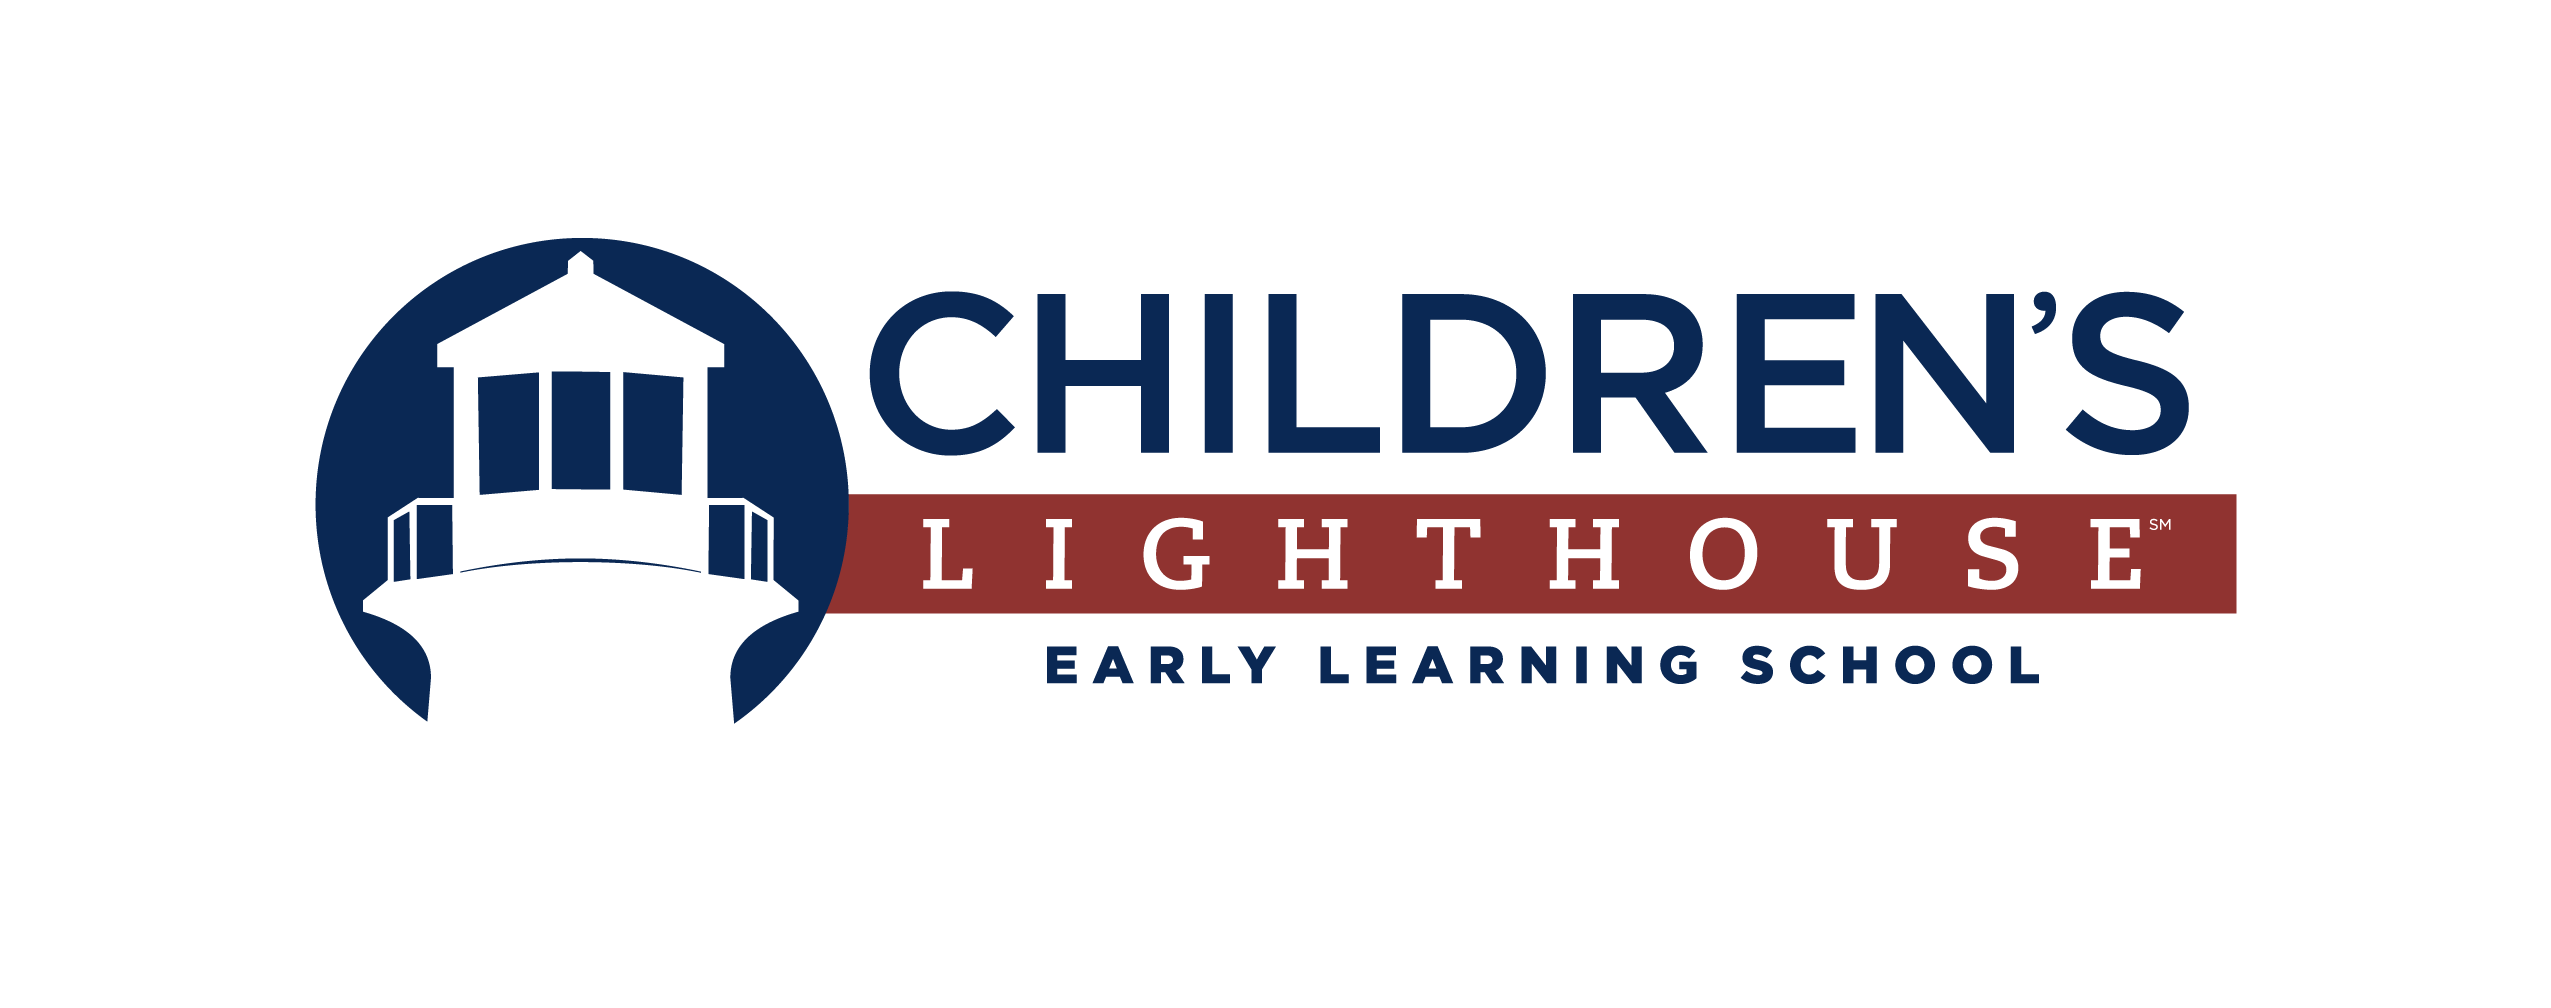 Children's Lighthouse Learning Center